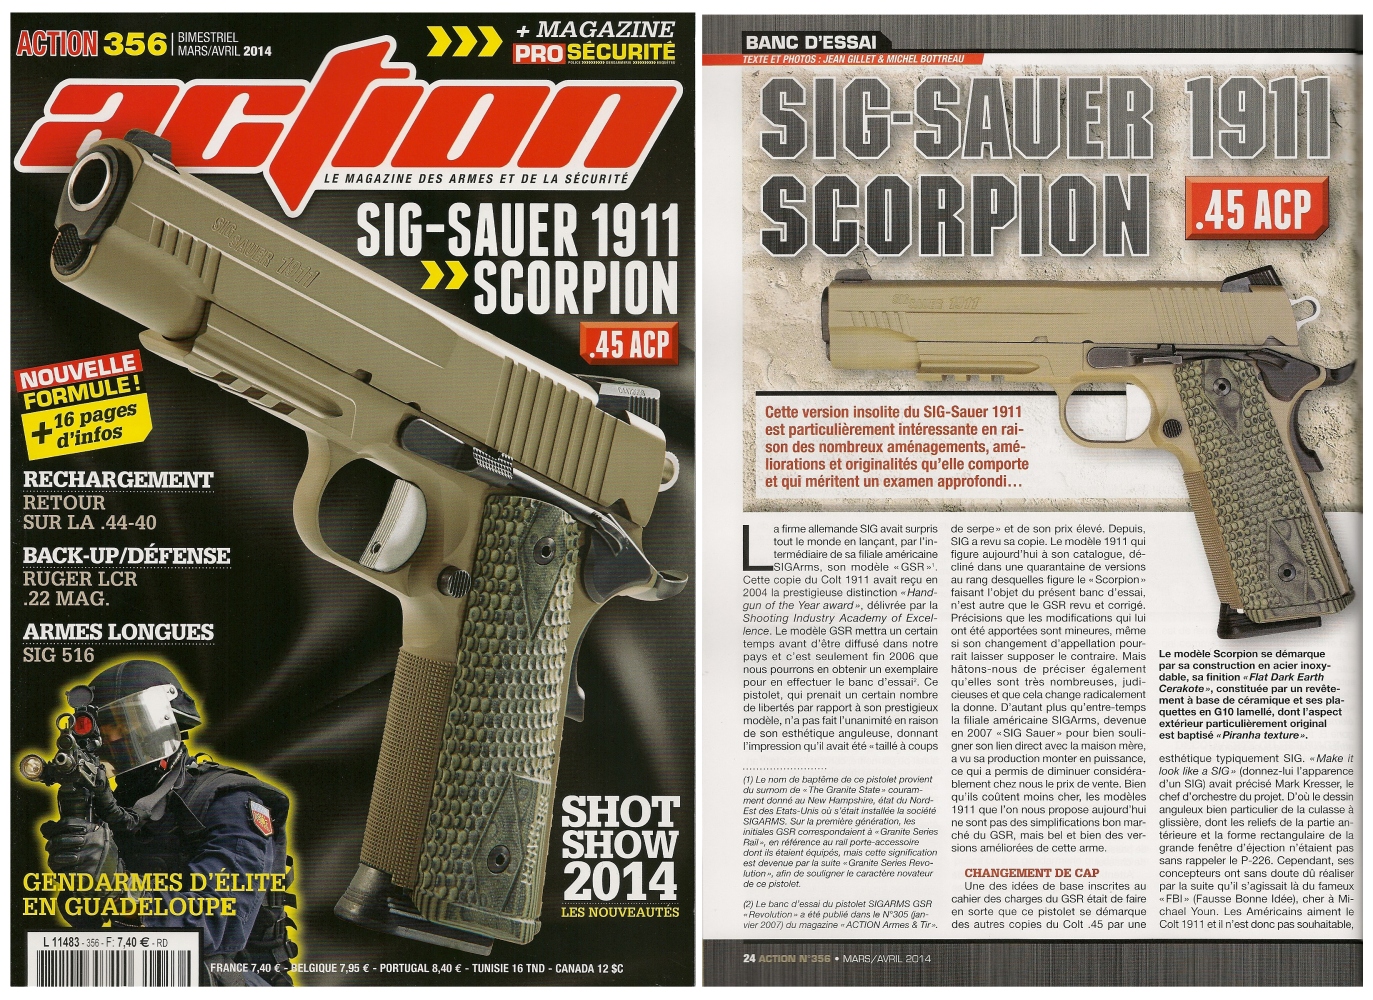 Le banc d’essai du pistolet Sig-Sauer 1911 Scorpion a été publié sur 6 pages dans le magazine Action n°356 (mars-avril 2014)